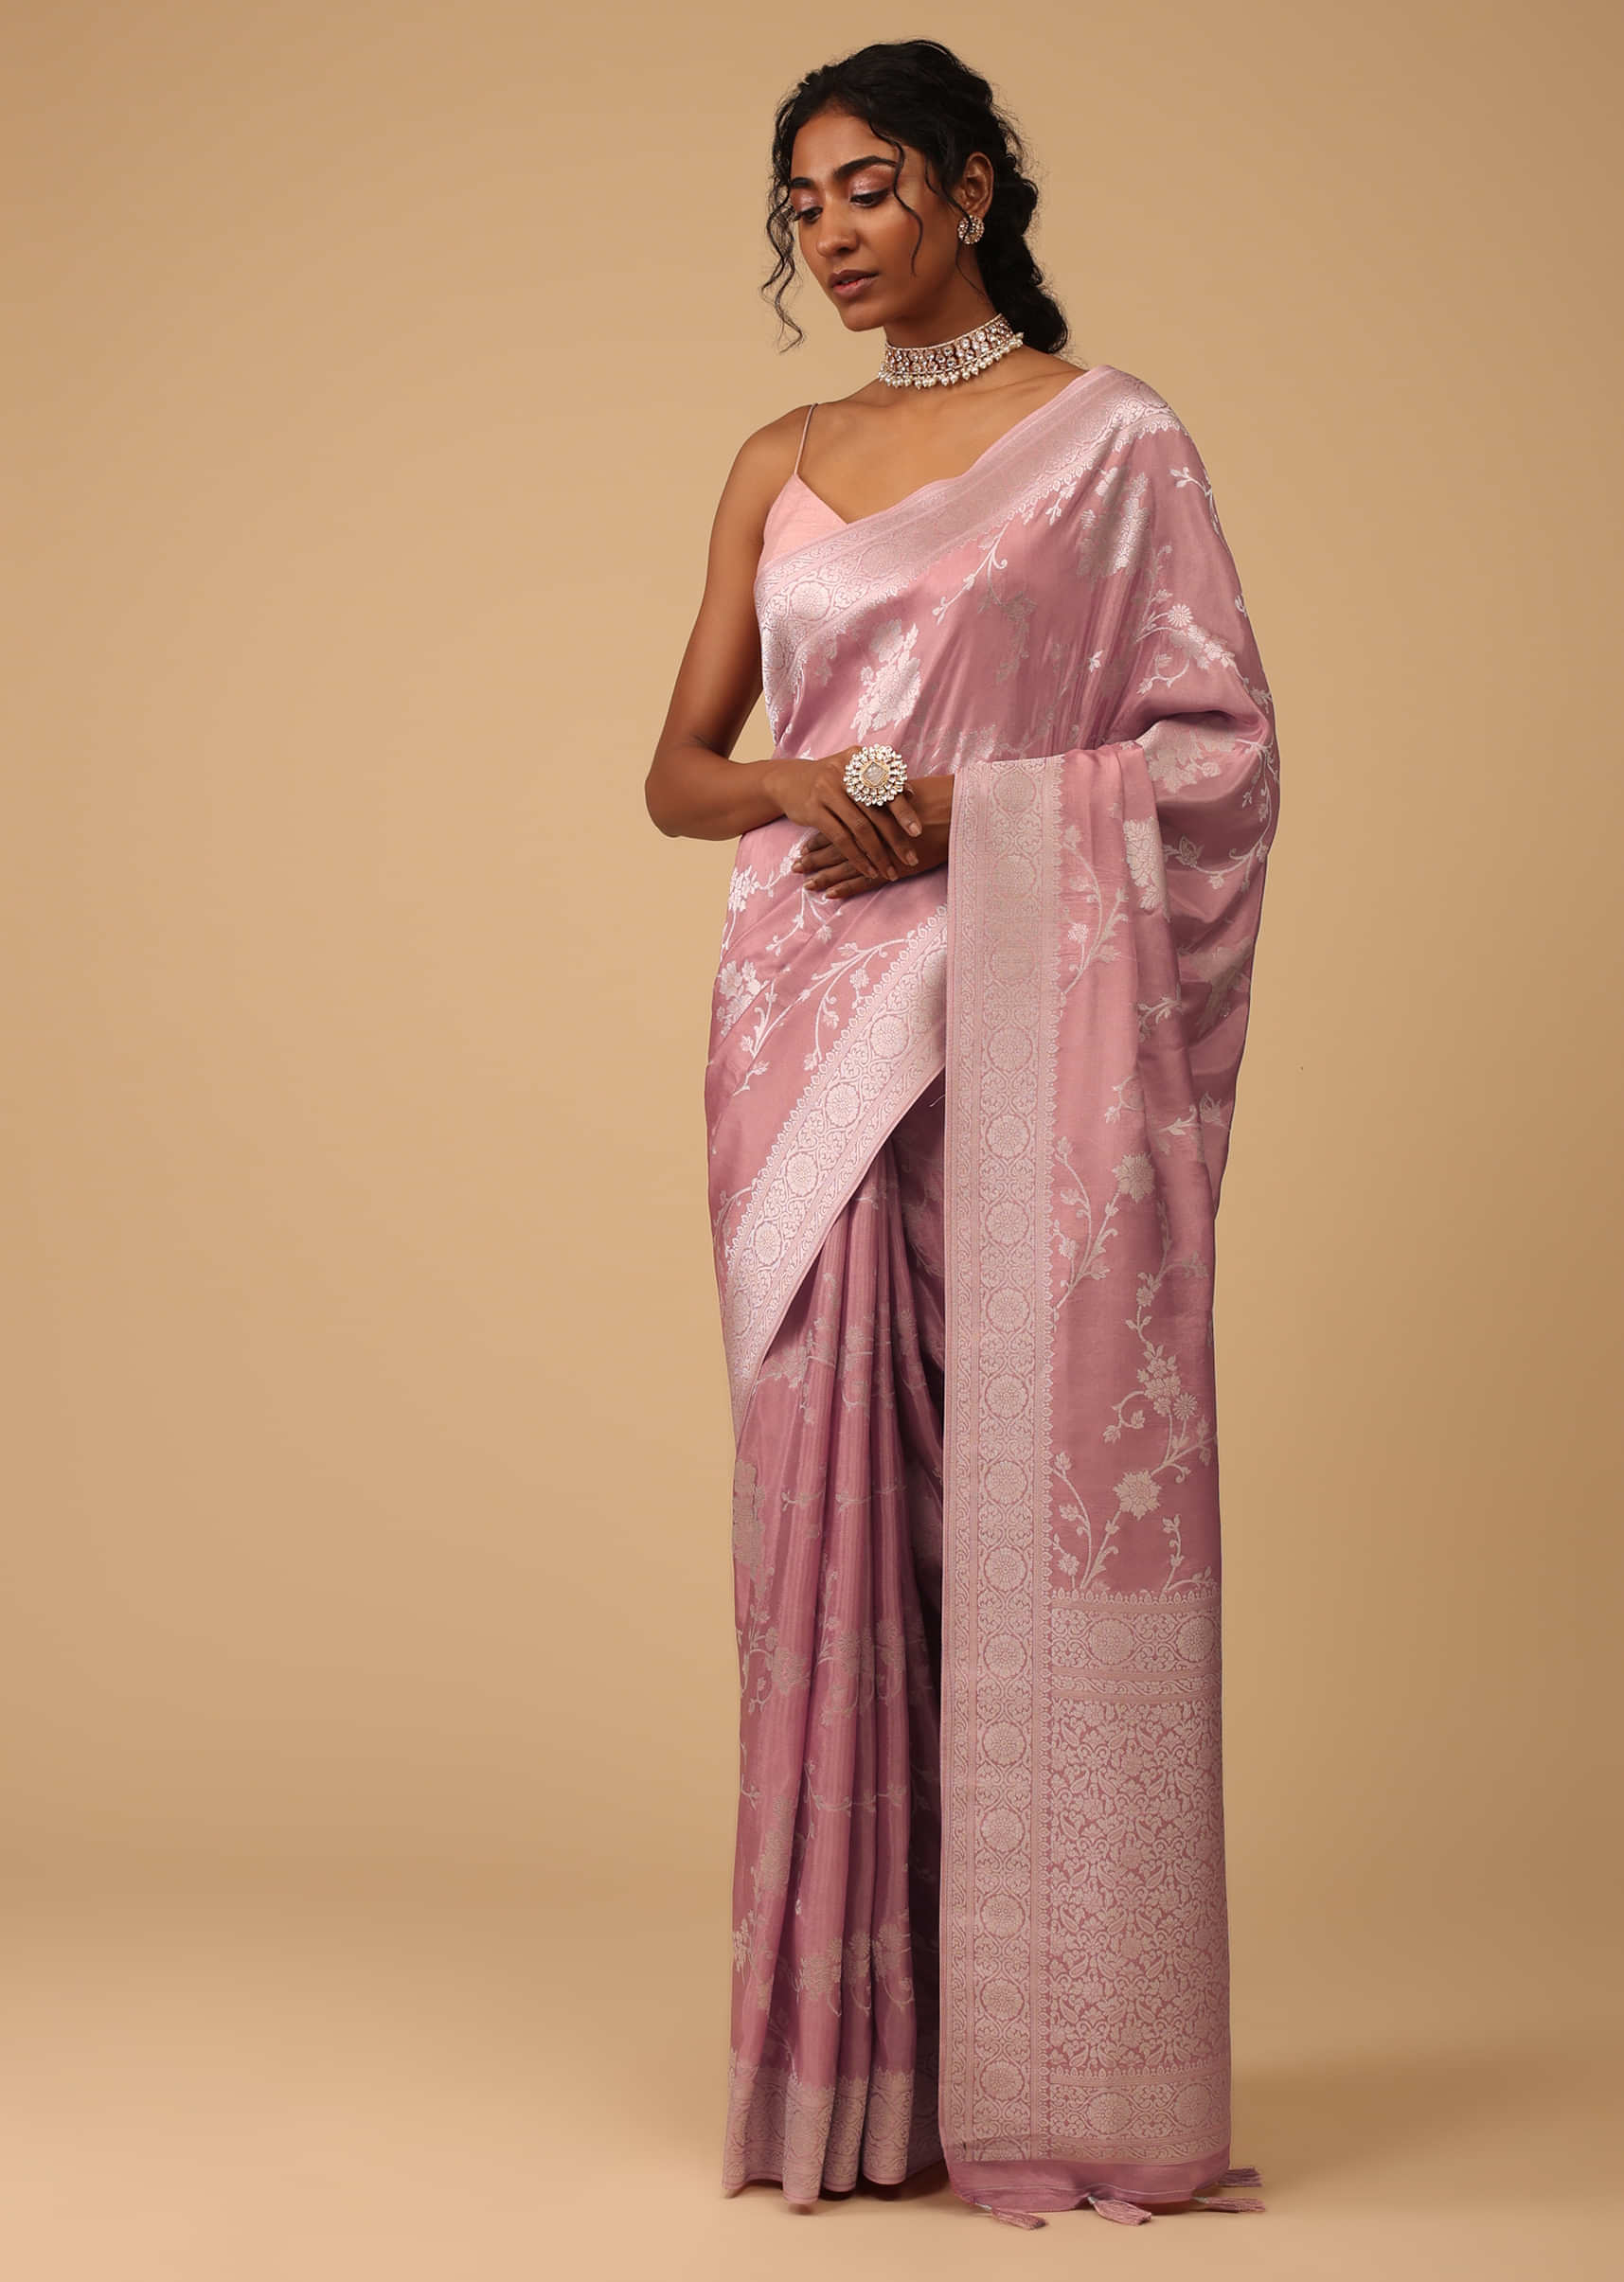 Latest Pakistani Powder Pink Saree Wedding Dress Online – Nameera by Farooq